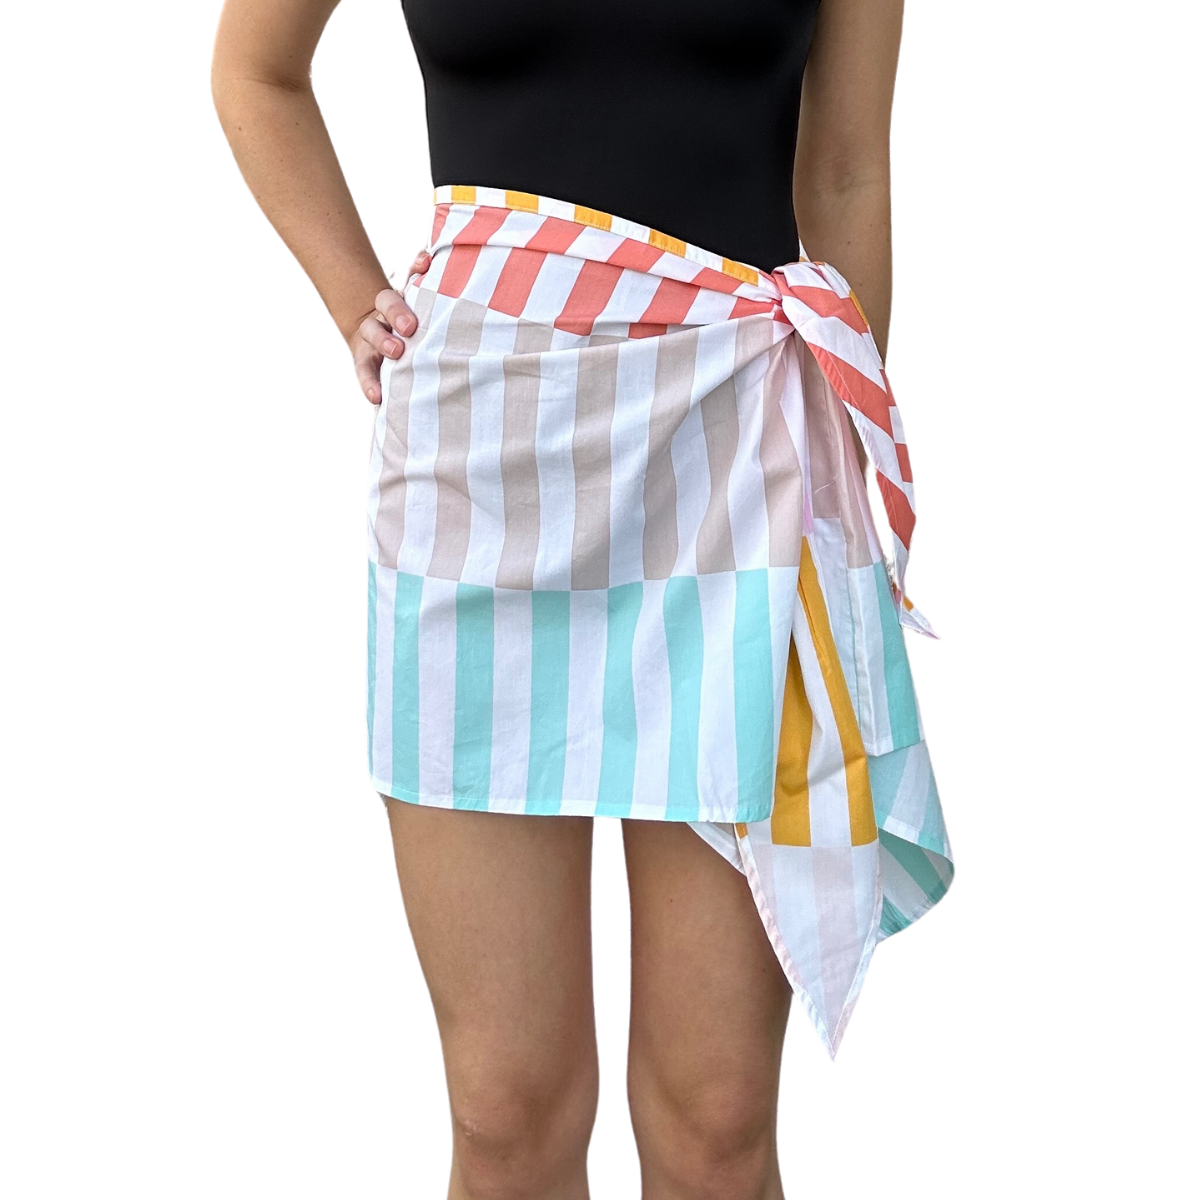 Sunbaker Wrap Skirt - Multi Stripe